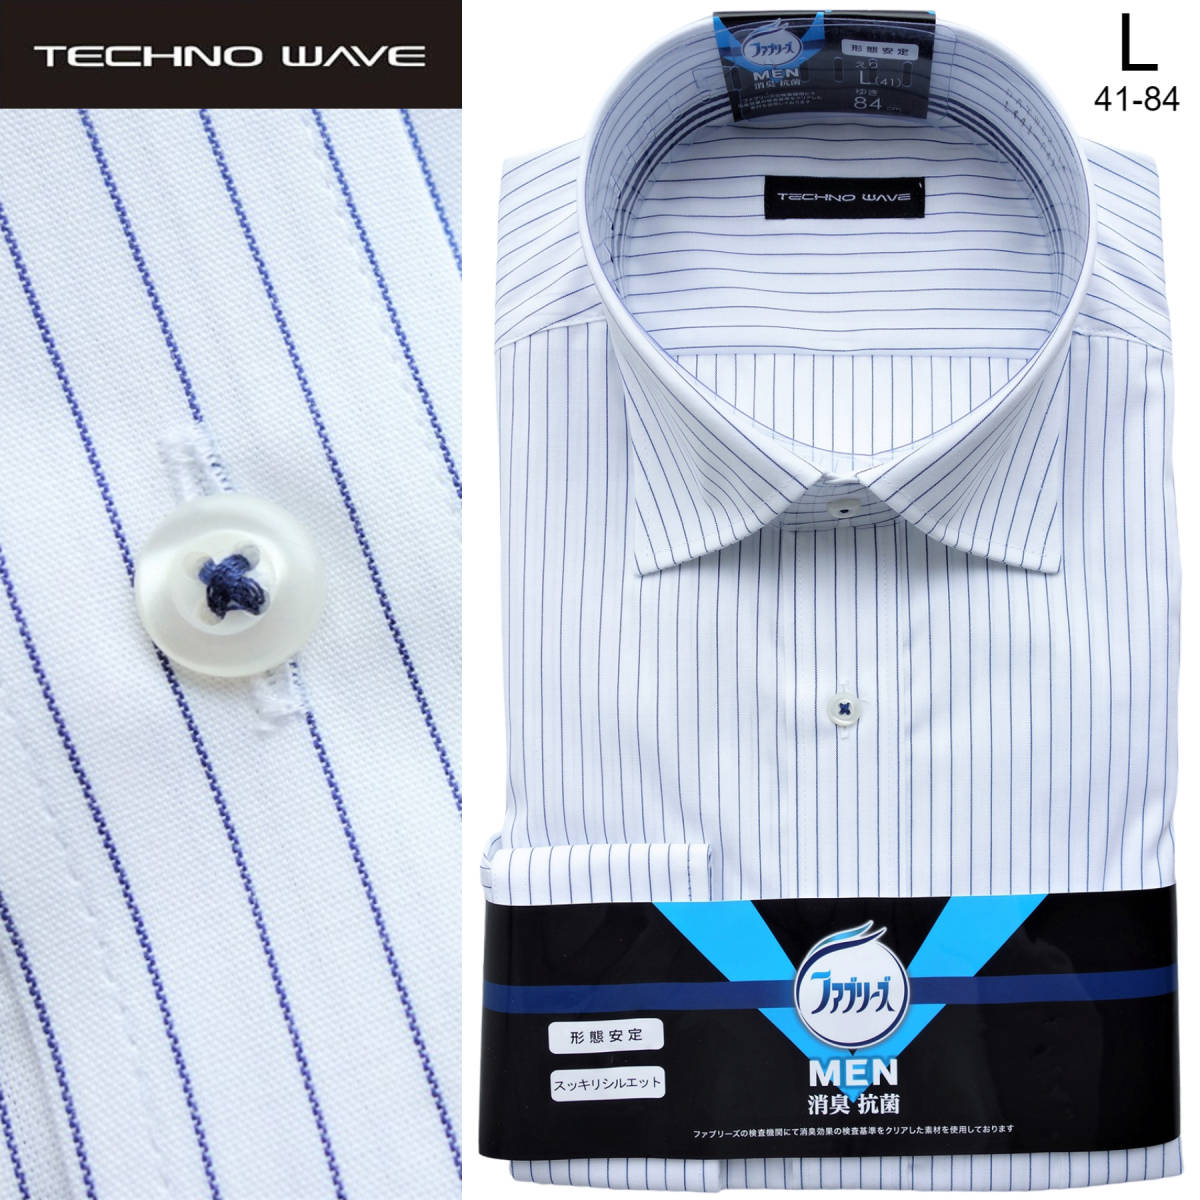 220525.012-4 TECHNO WAVE×ファブリーズ 消臭抗菌 形態安定 L(41-84) ワイドカラー長袖ドレスシャツ ネイビーストライプ ホワイト 紺×白の画像1